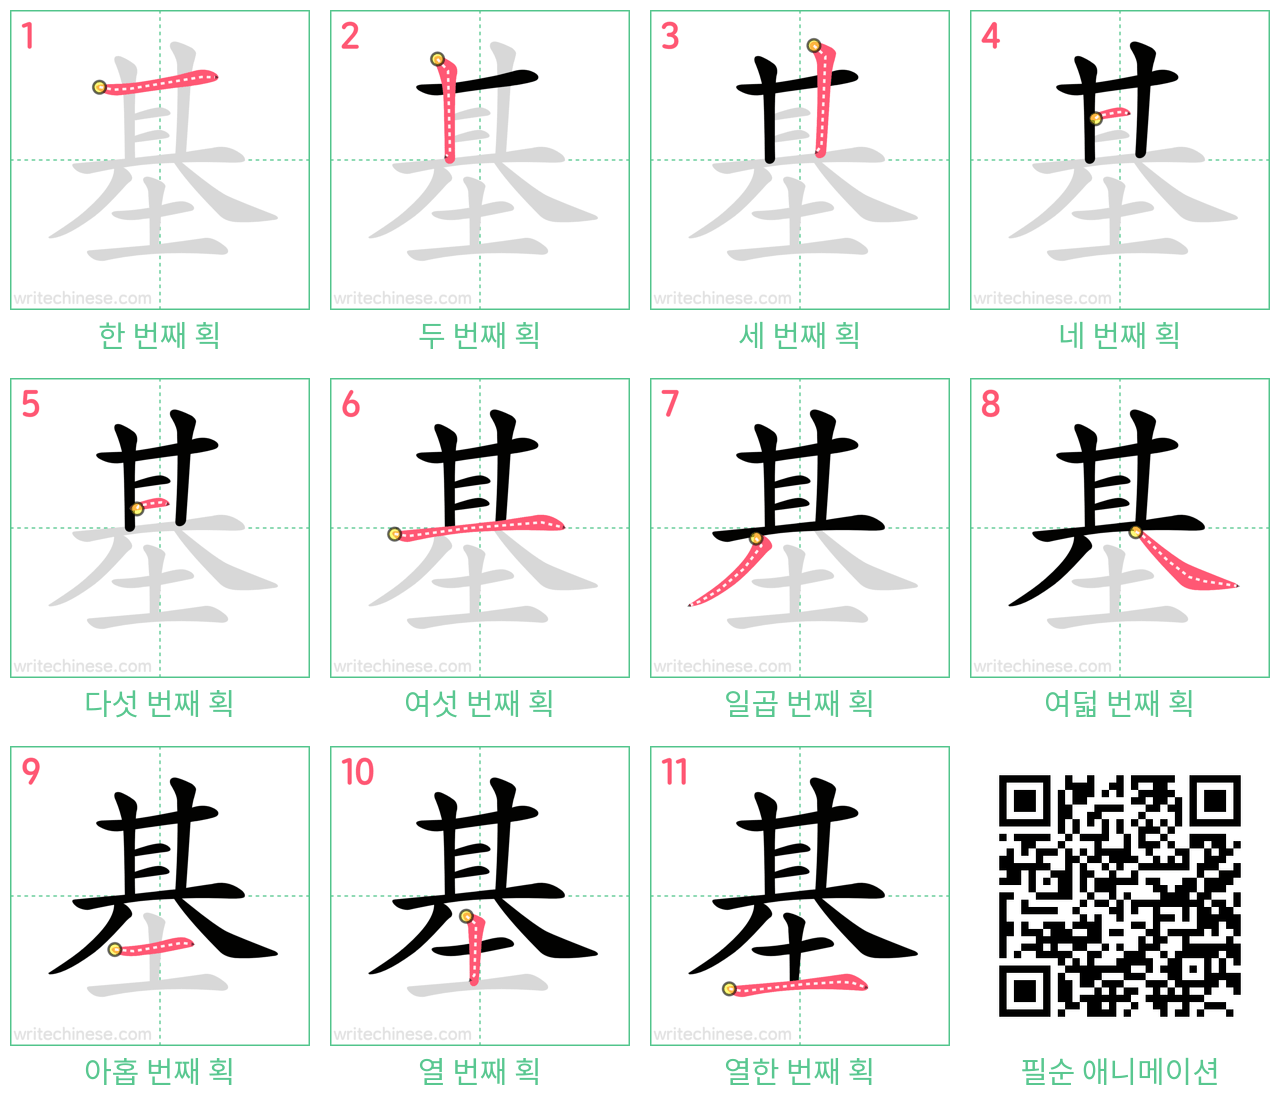 基 step-by-step stroke order diagrams